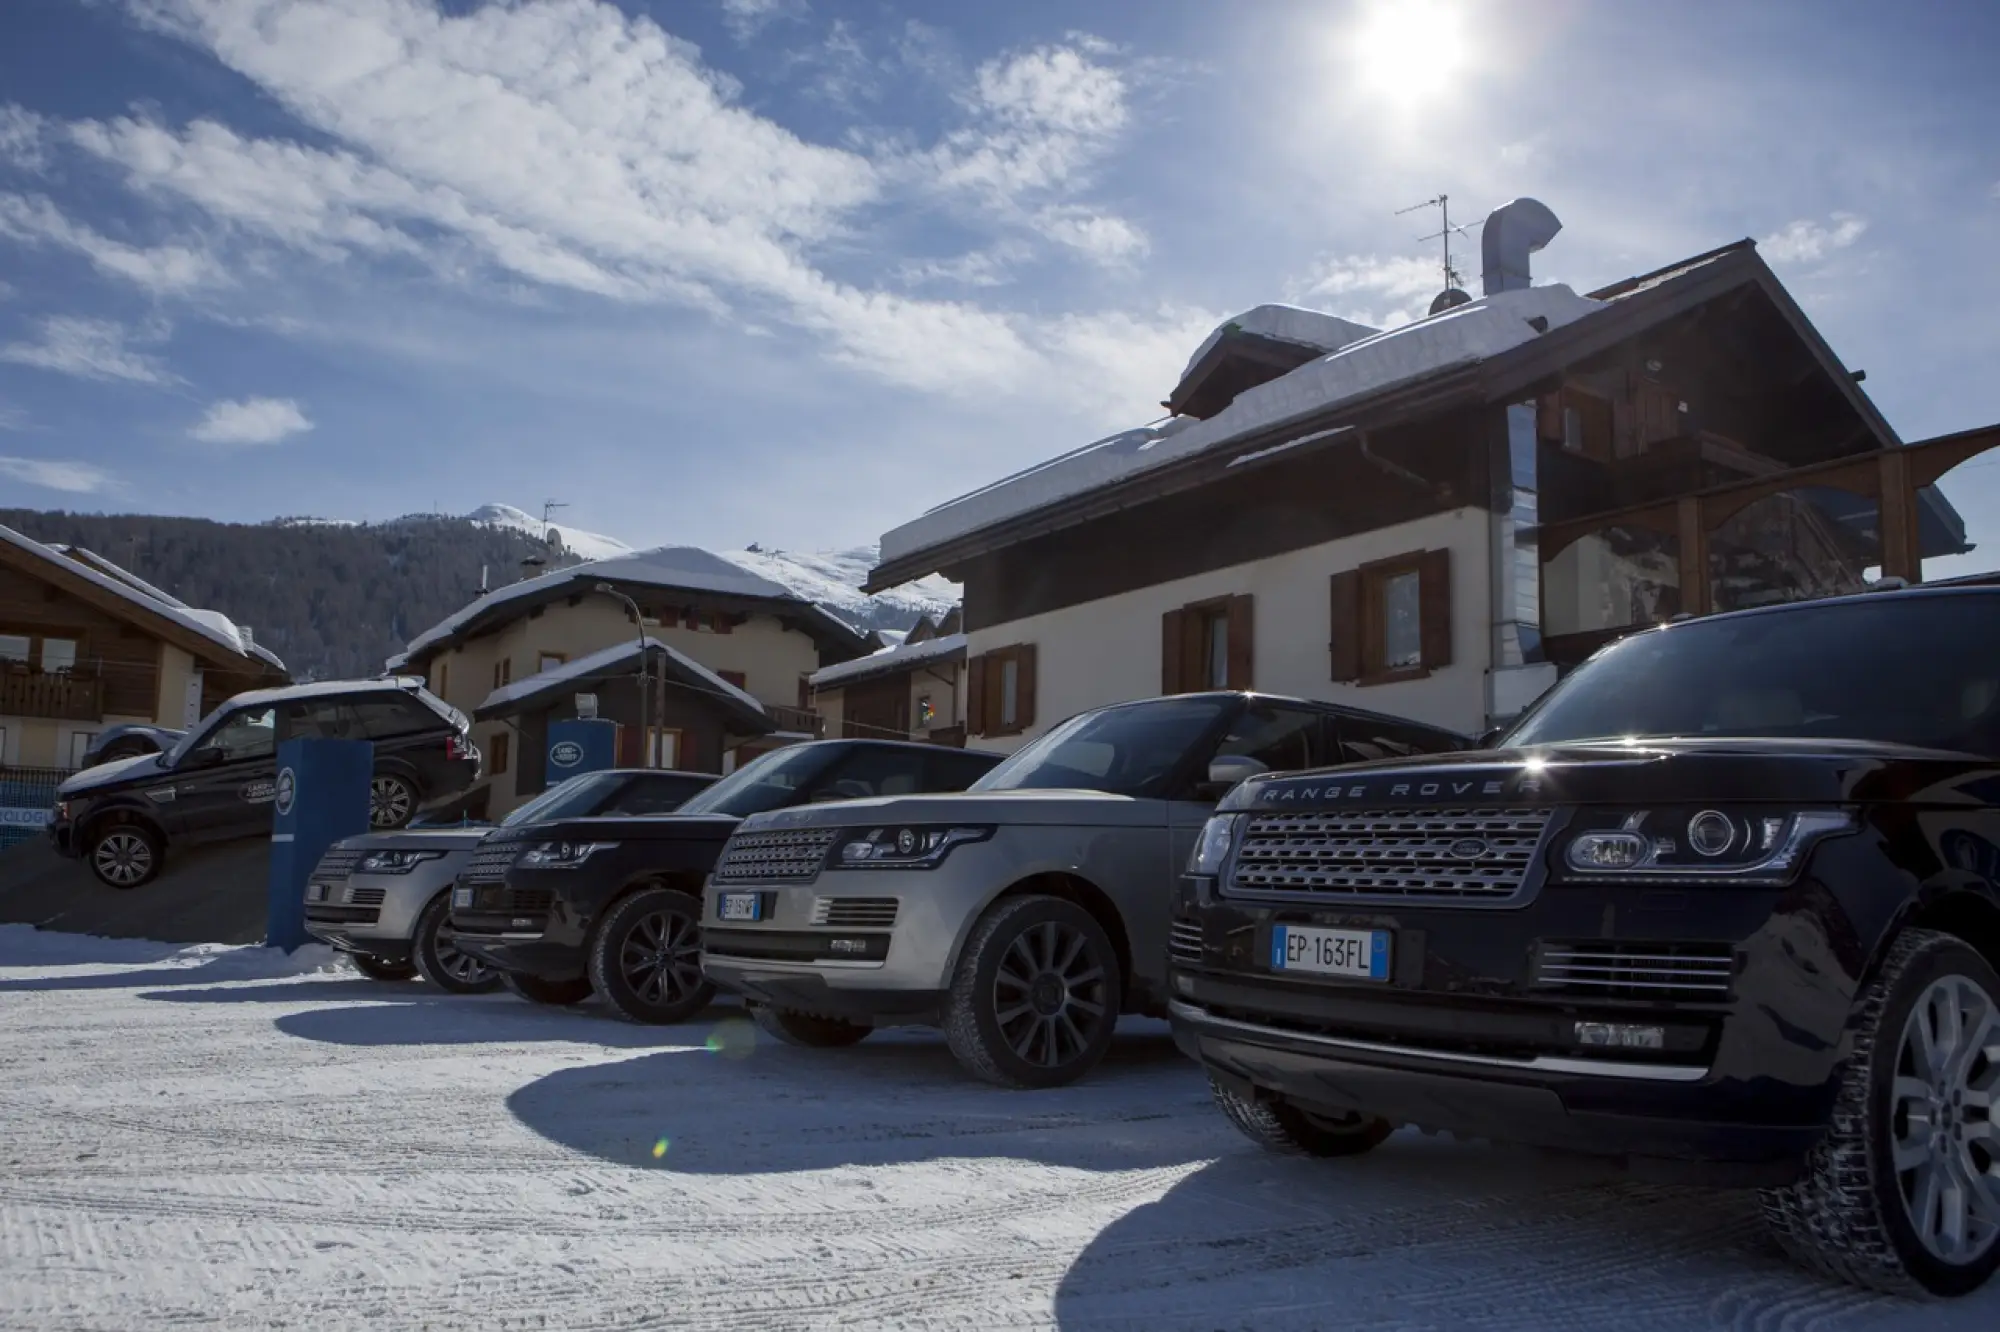 Nuova Range Rover - Presentazione stampa italiana - Bormio 2013 - 88